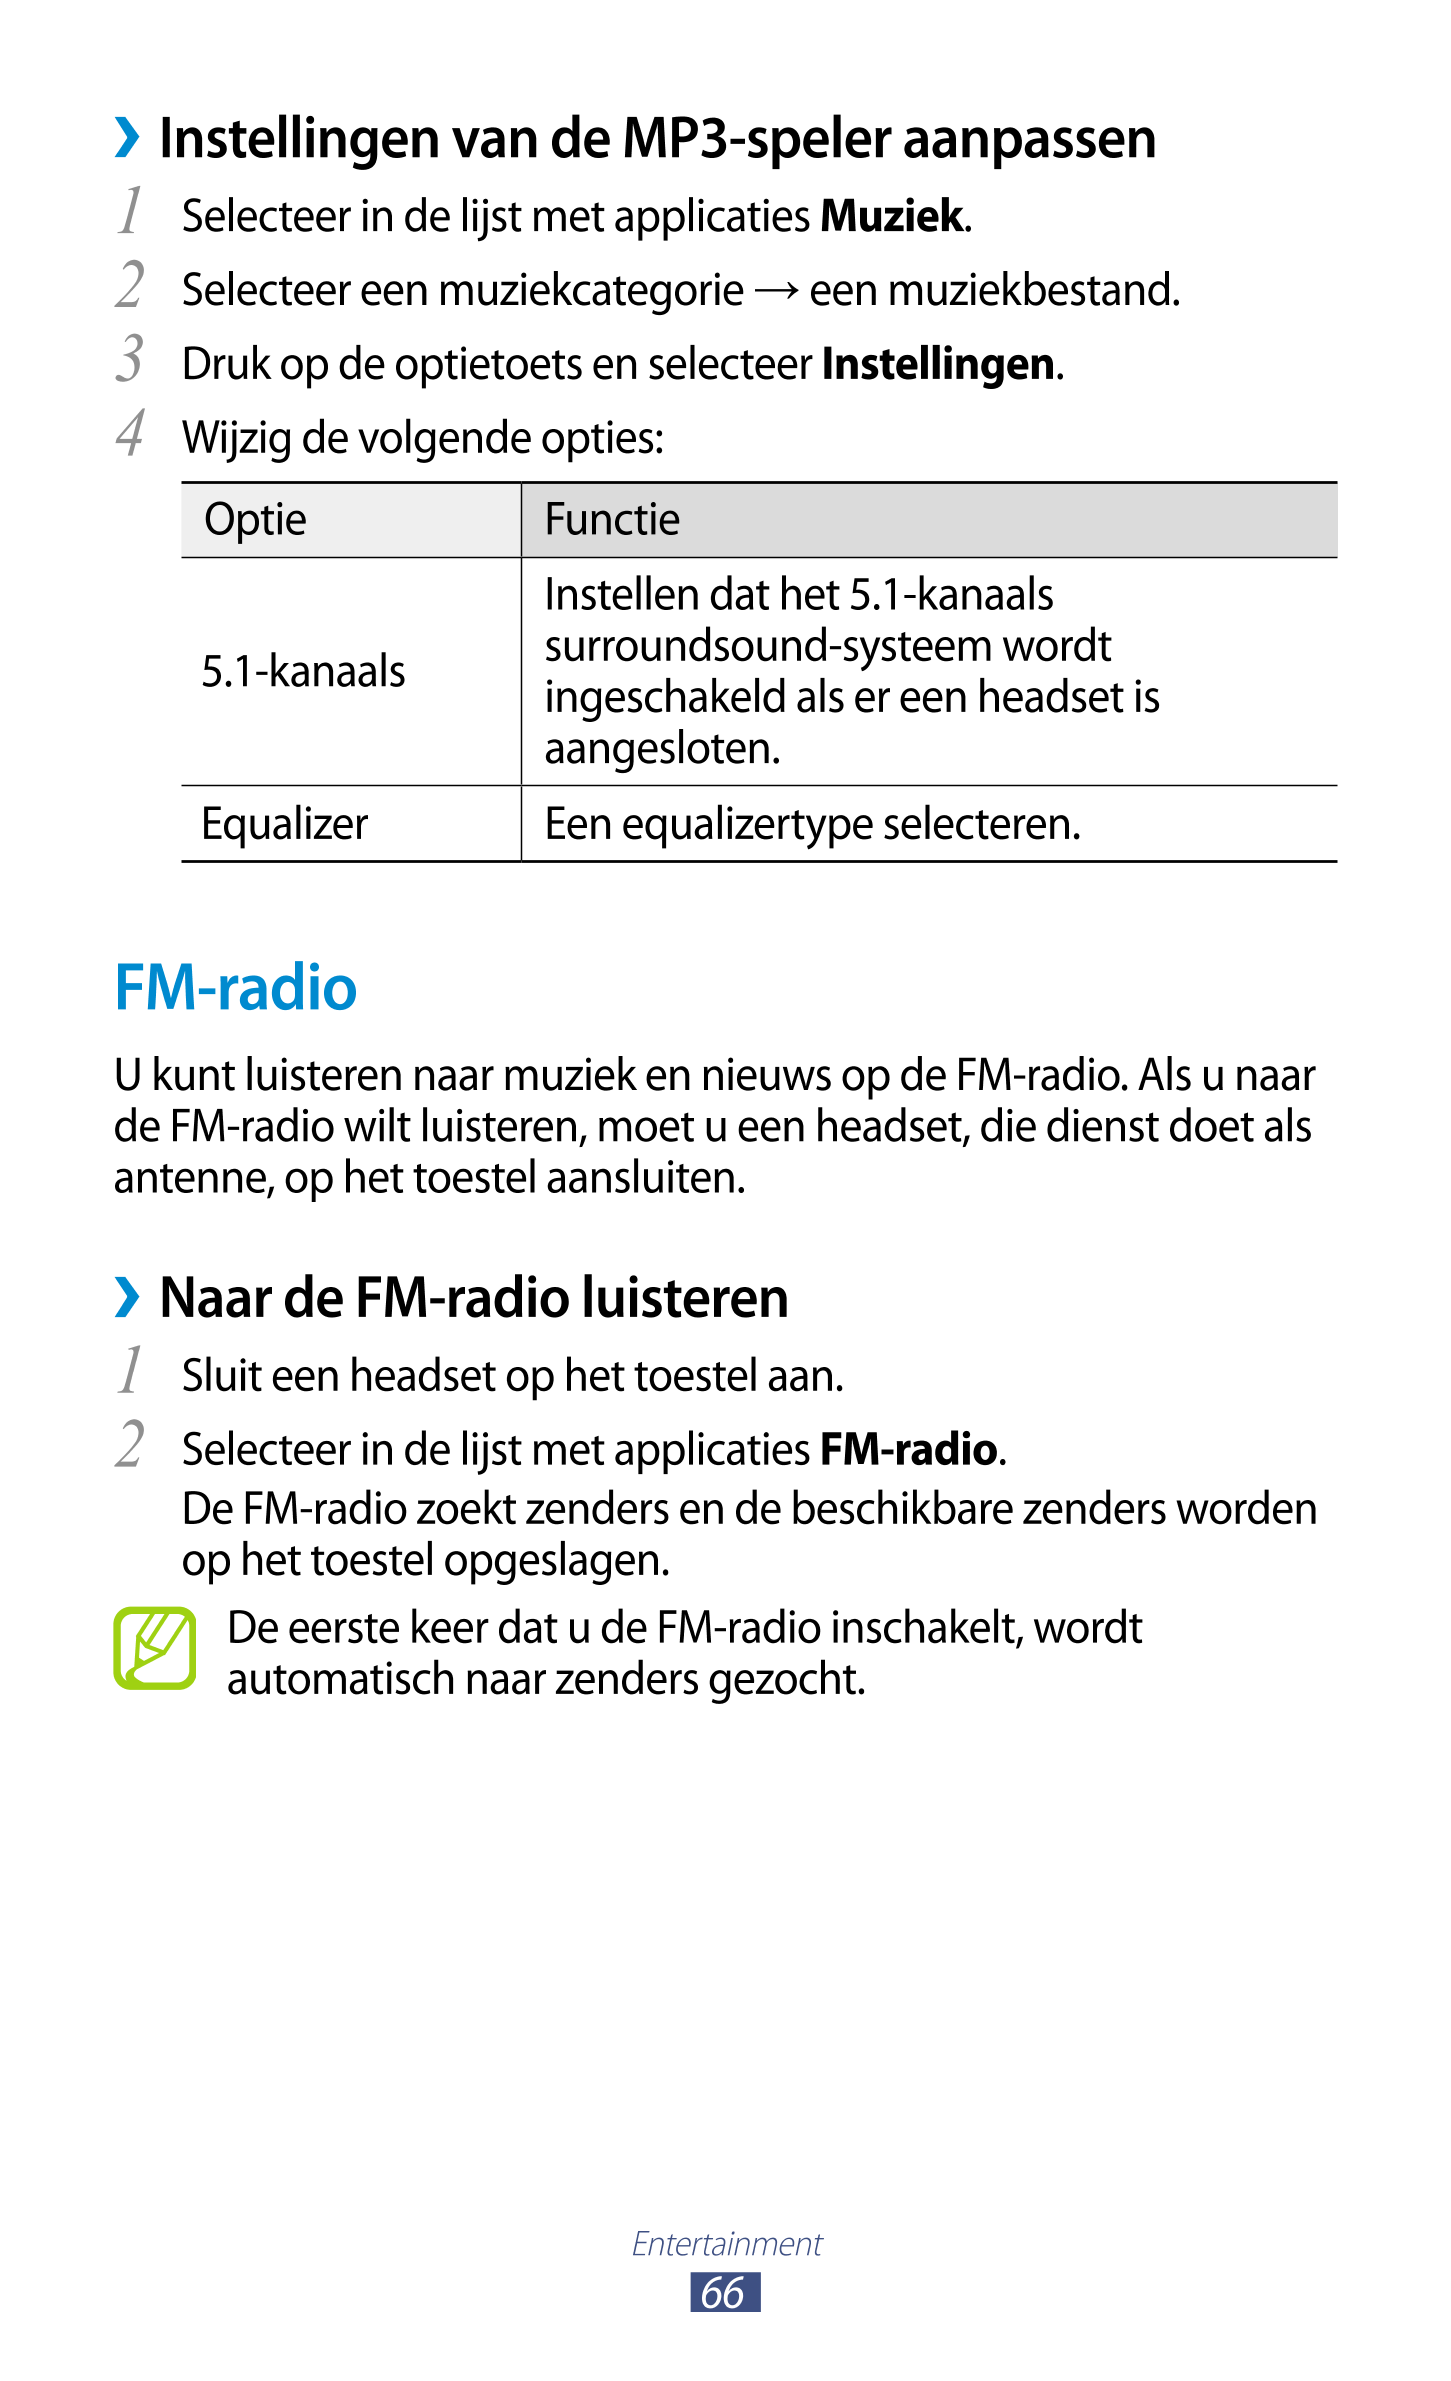   Instellingen van de MP3-speler aanpassen
1  Selecteer in de lijst met applicaties  Muziek.
2  Selecteer een muziekcategorie  →